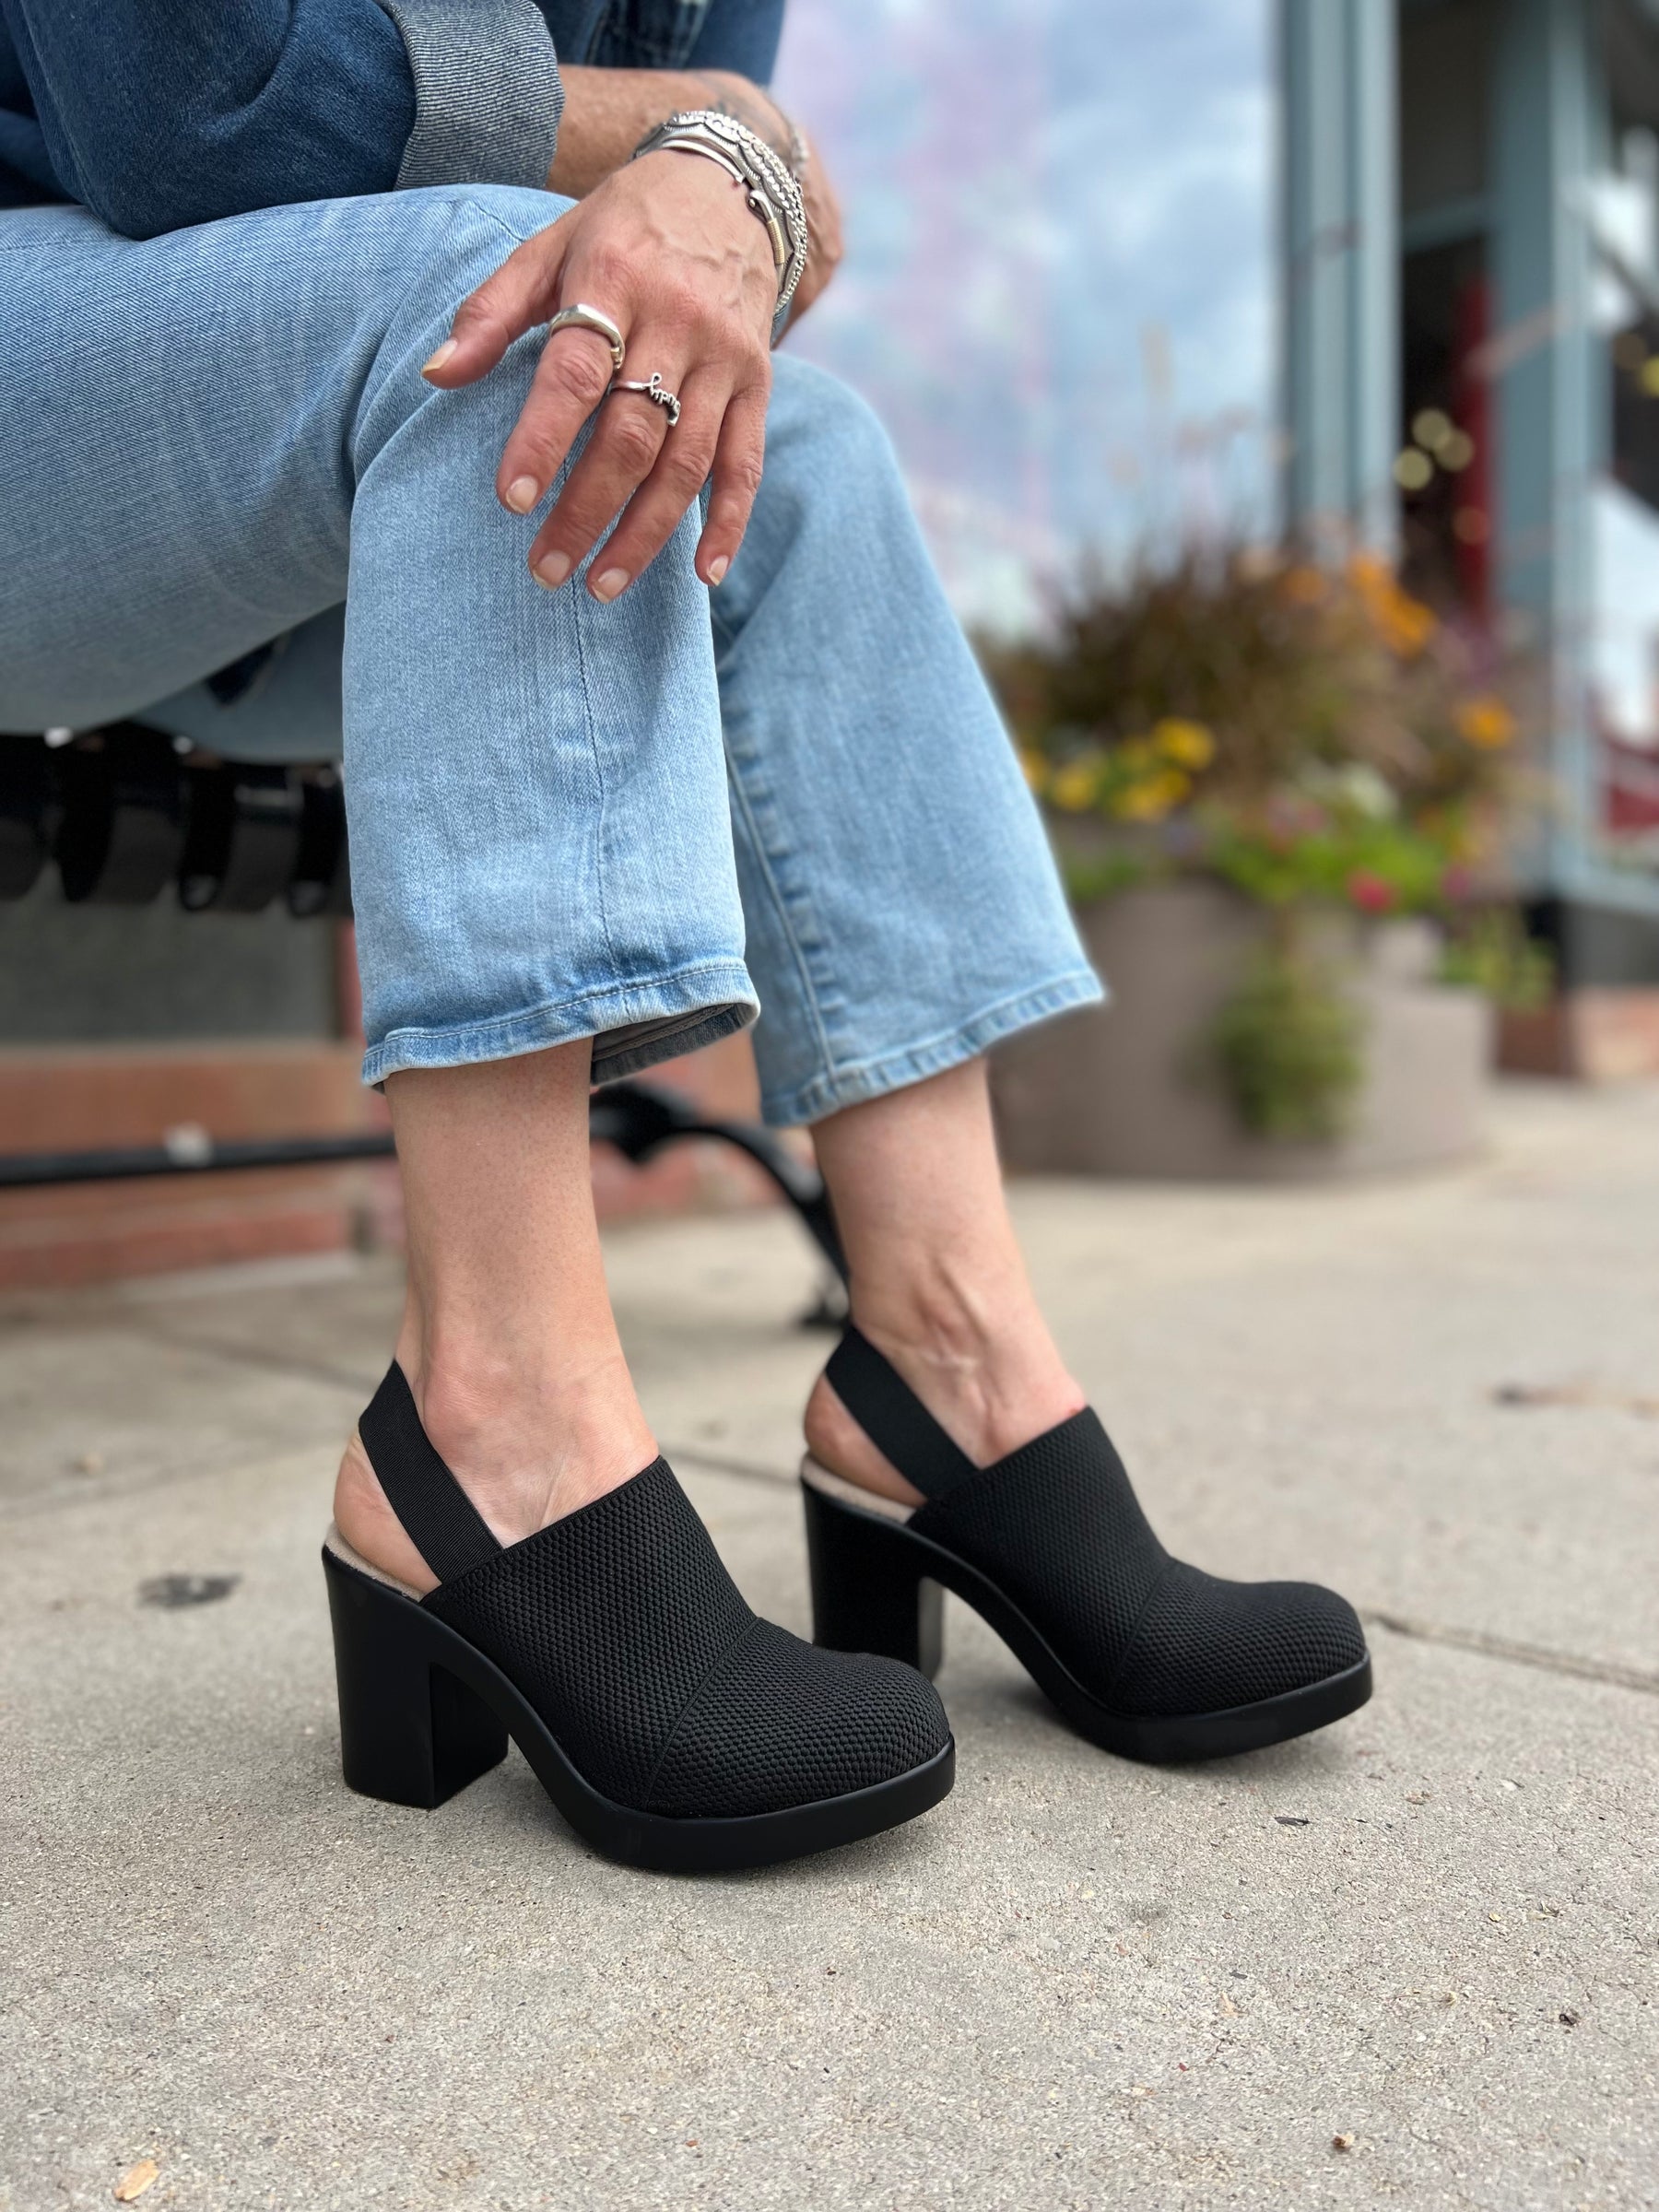 Almond Toe Flat Mule in Black, Women's Shoes